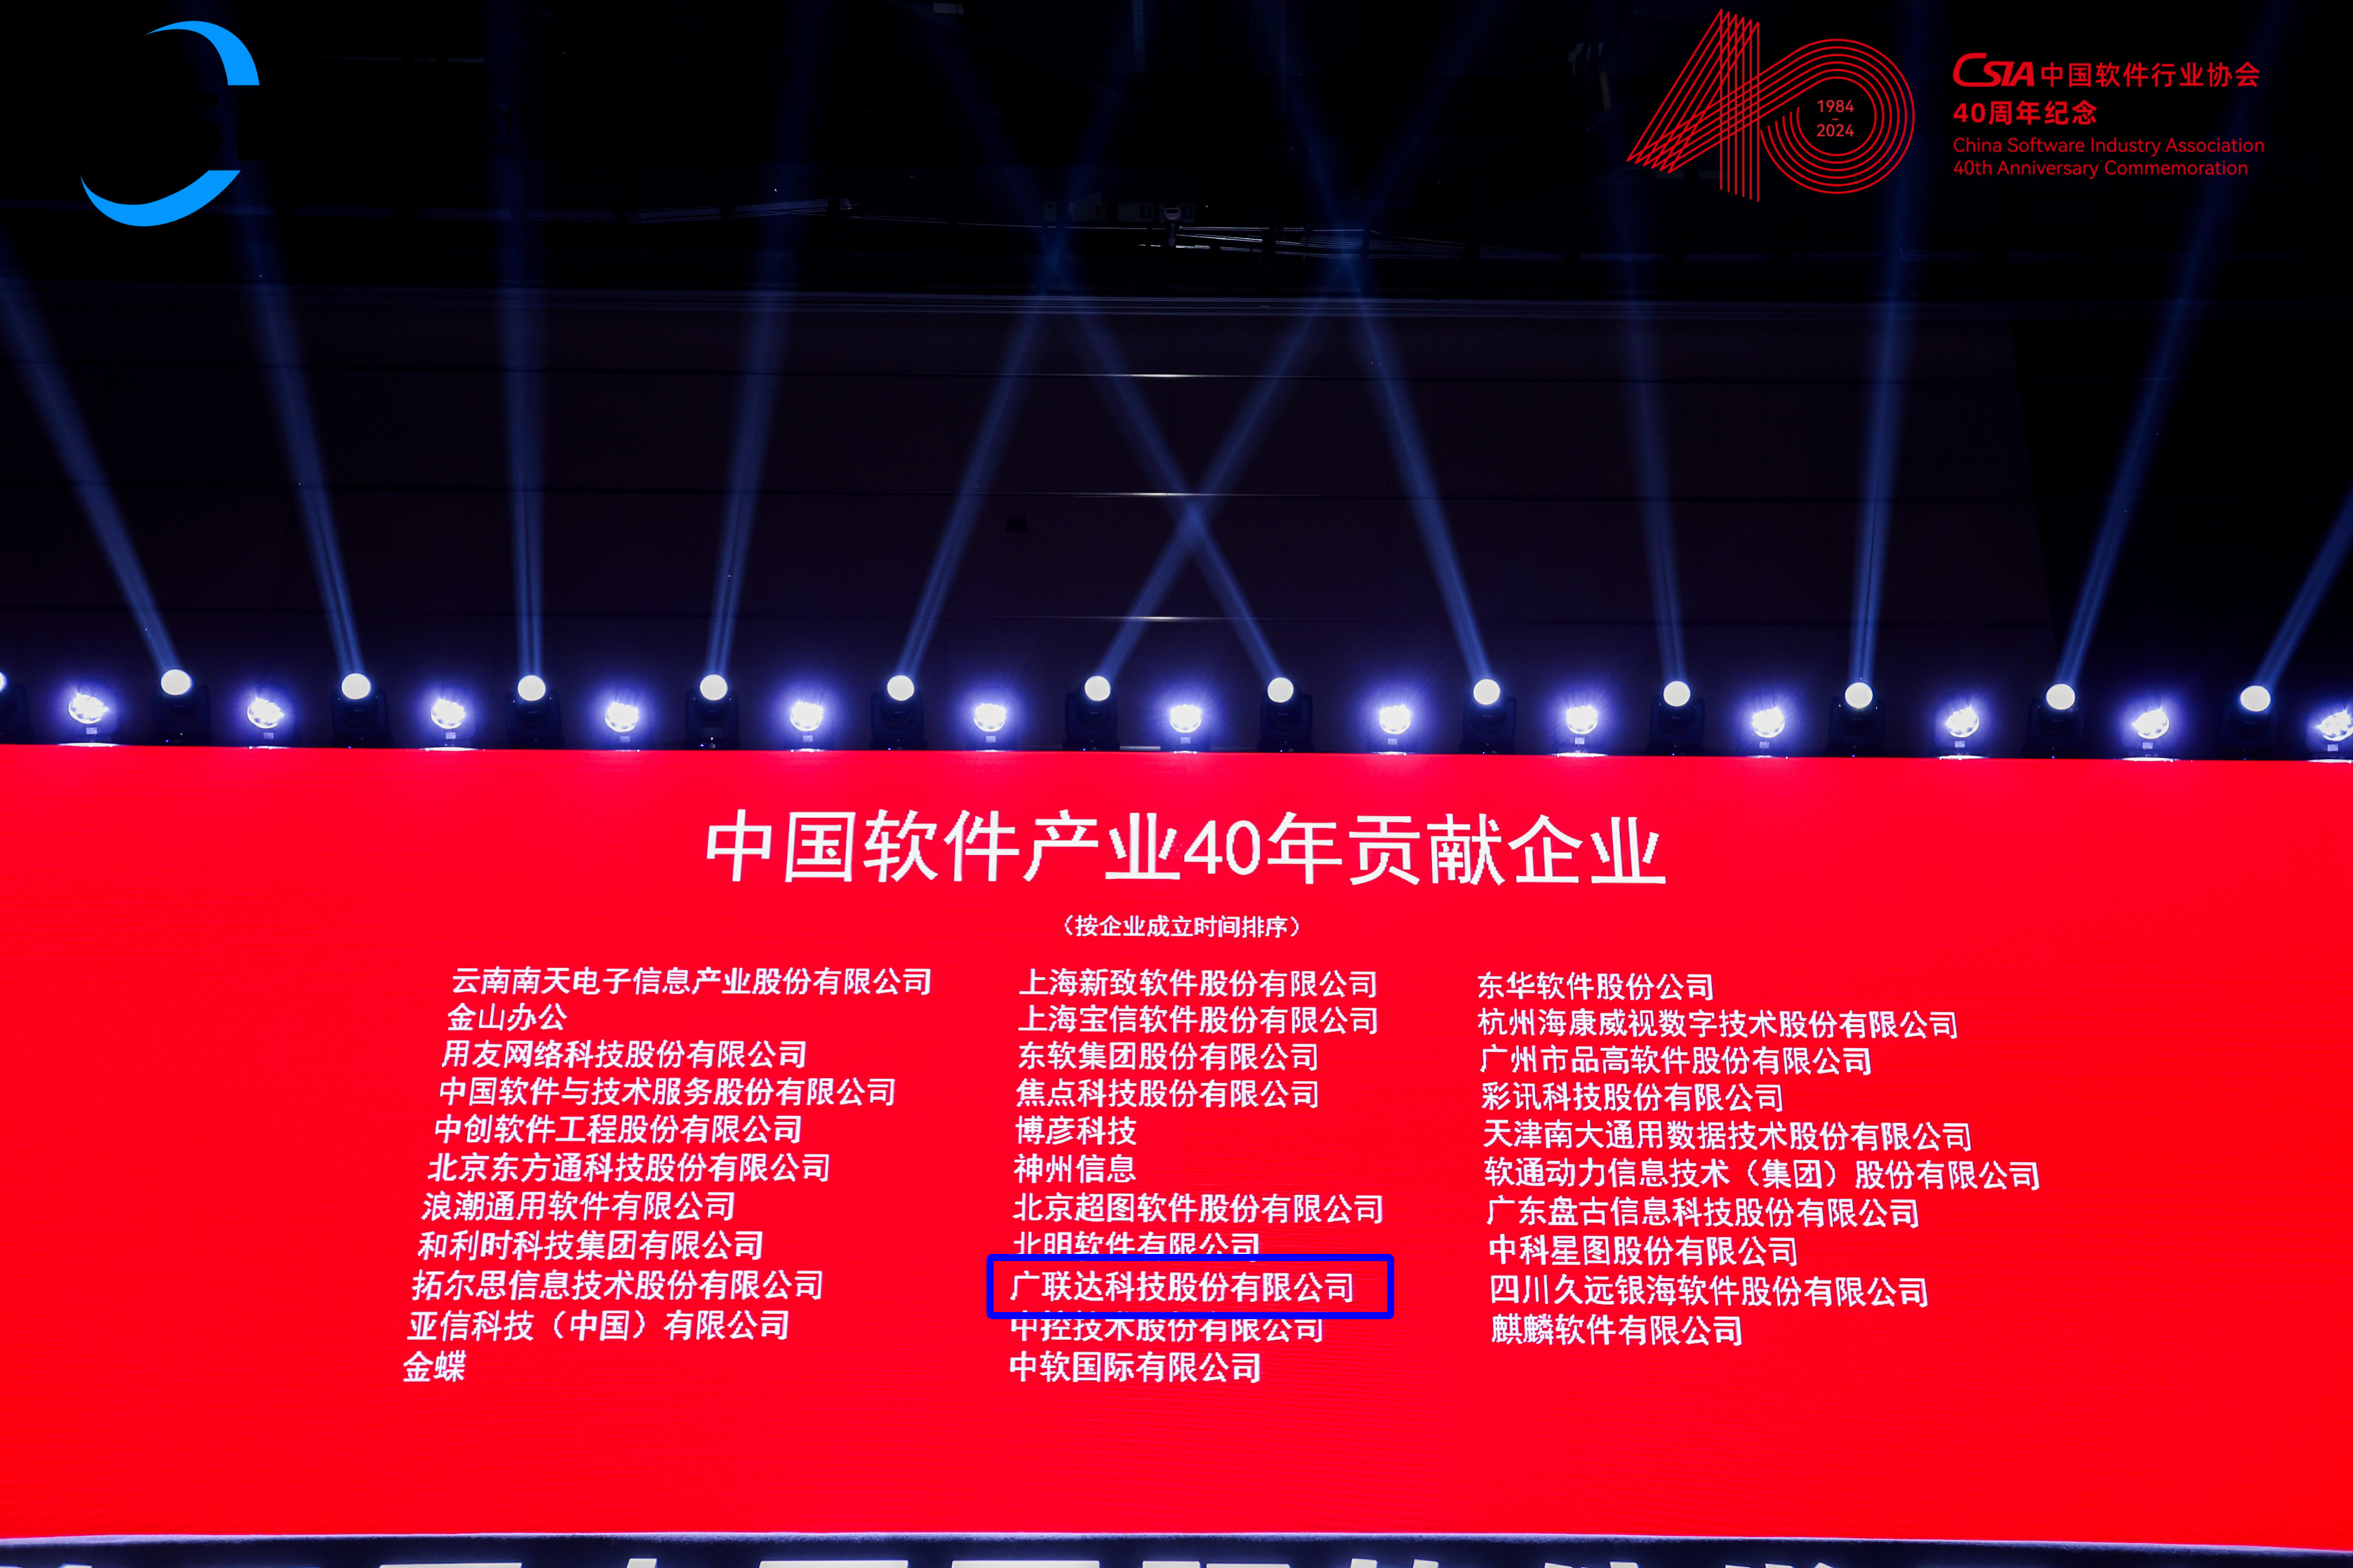 中国软件产业40年贡献企业1.jpg